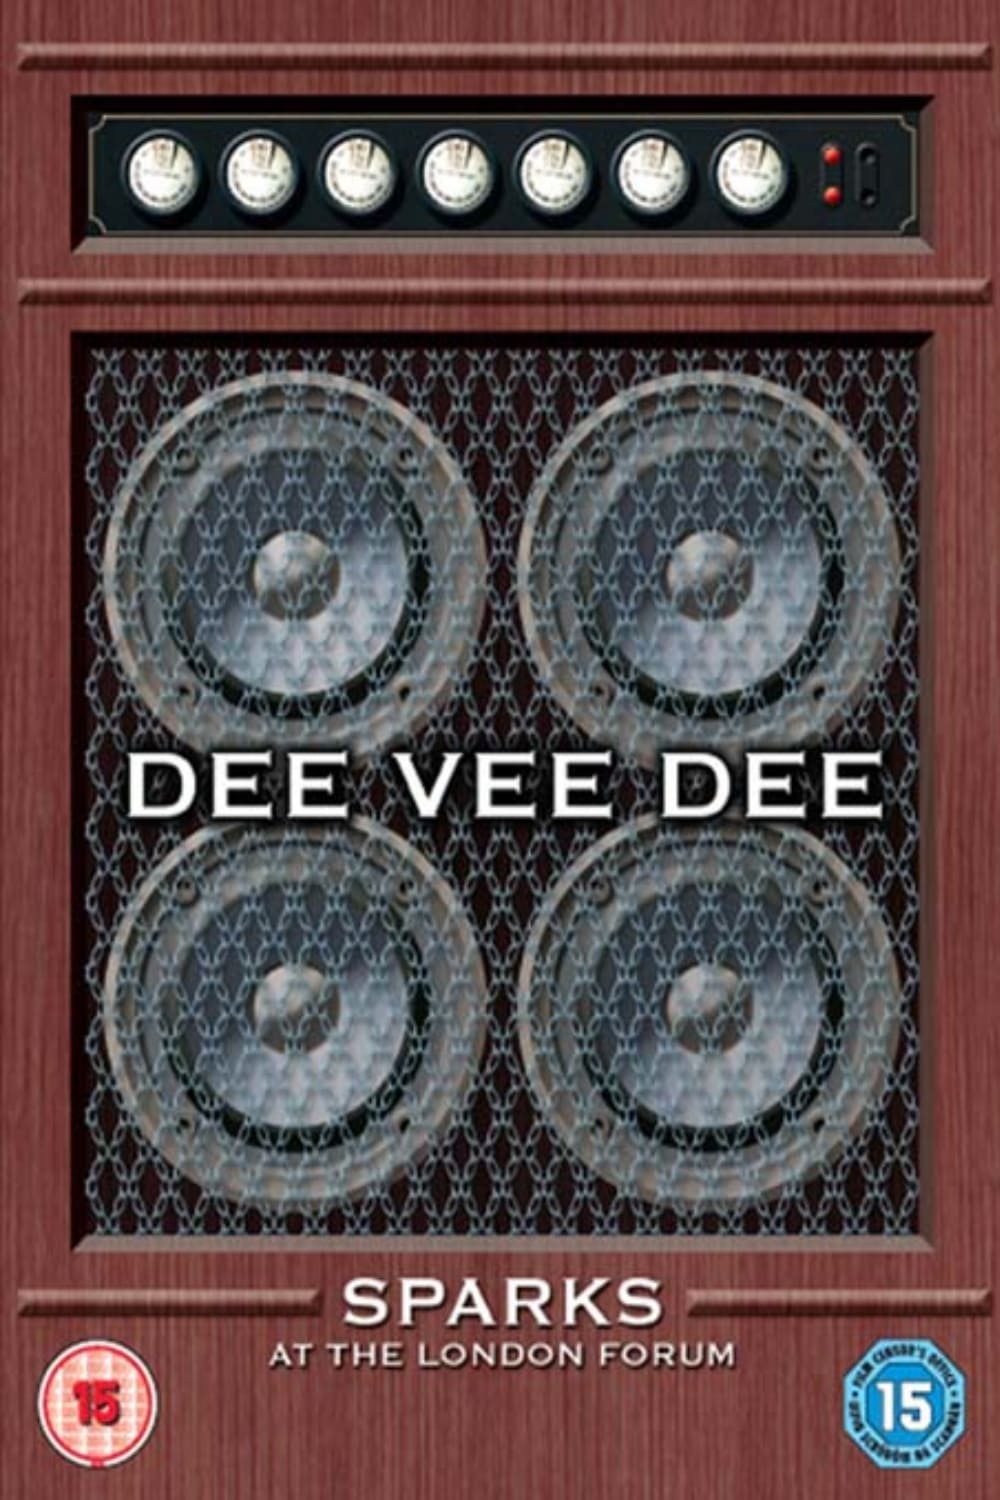 Sparks - Dee Vee Dee